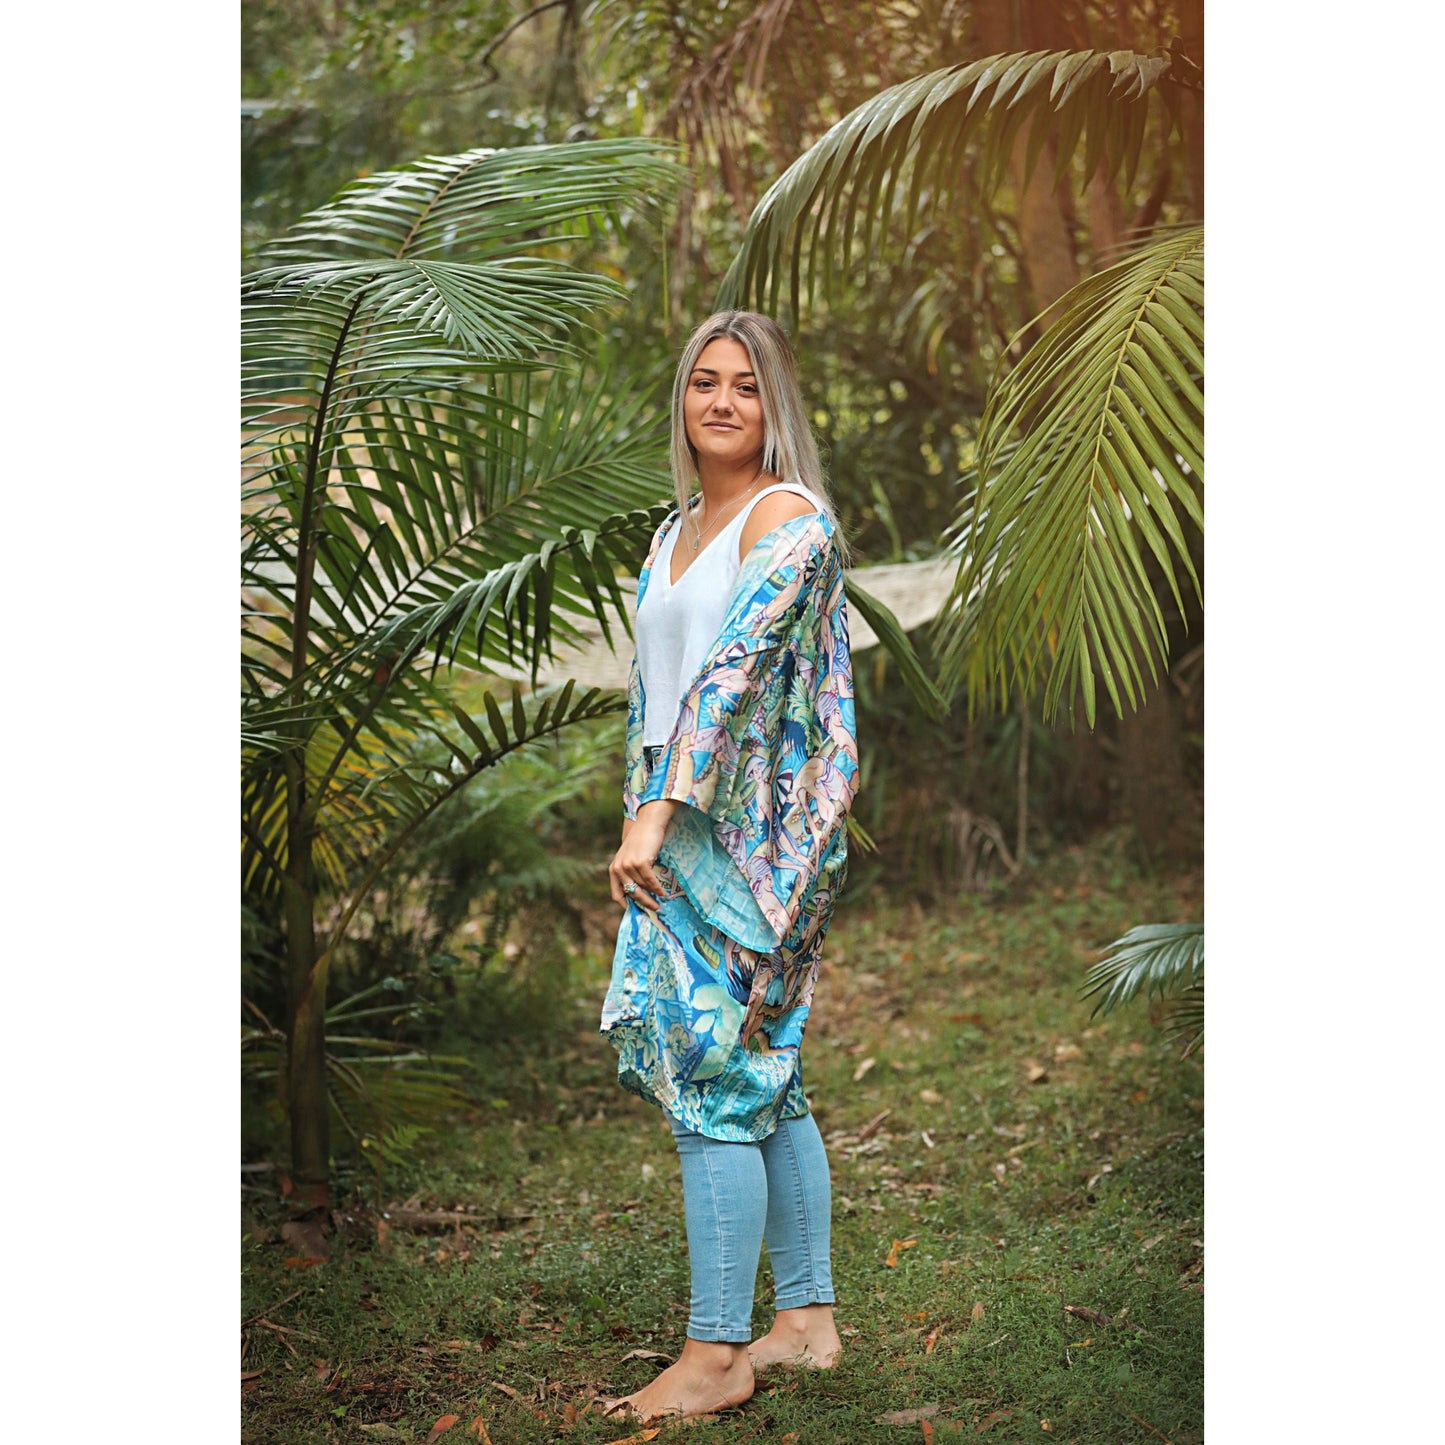 Bali Love kimono SALE $139 now $69